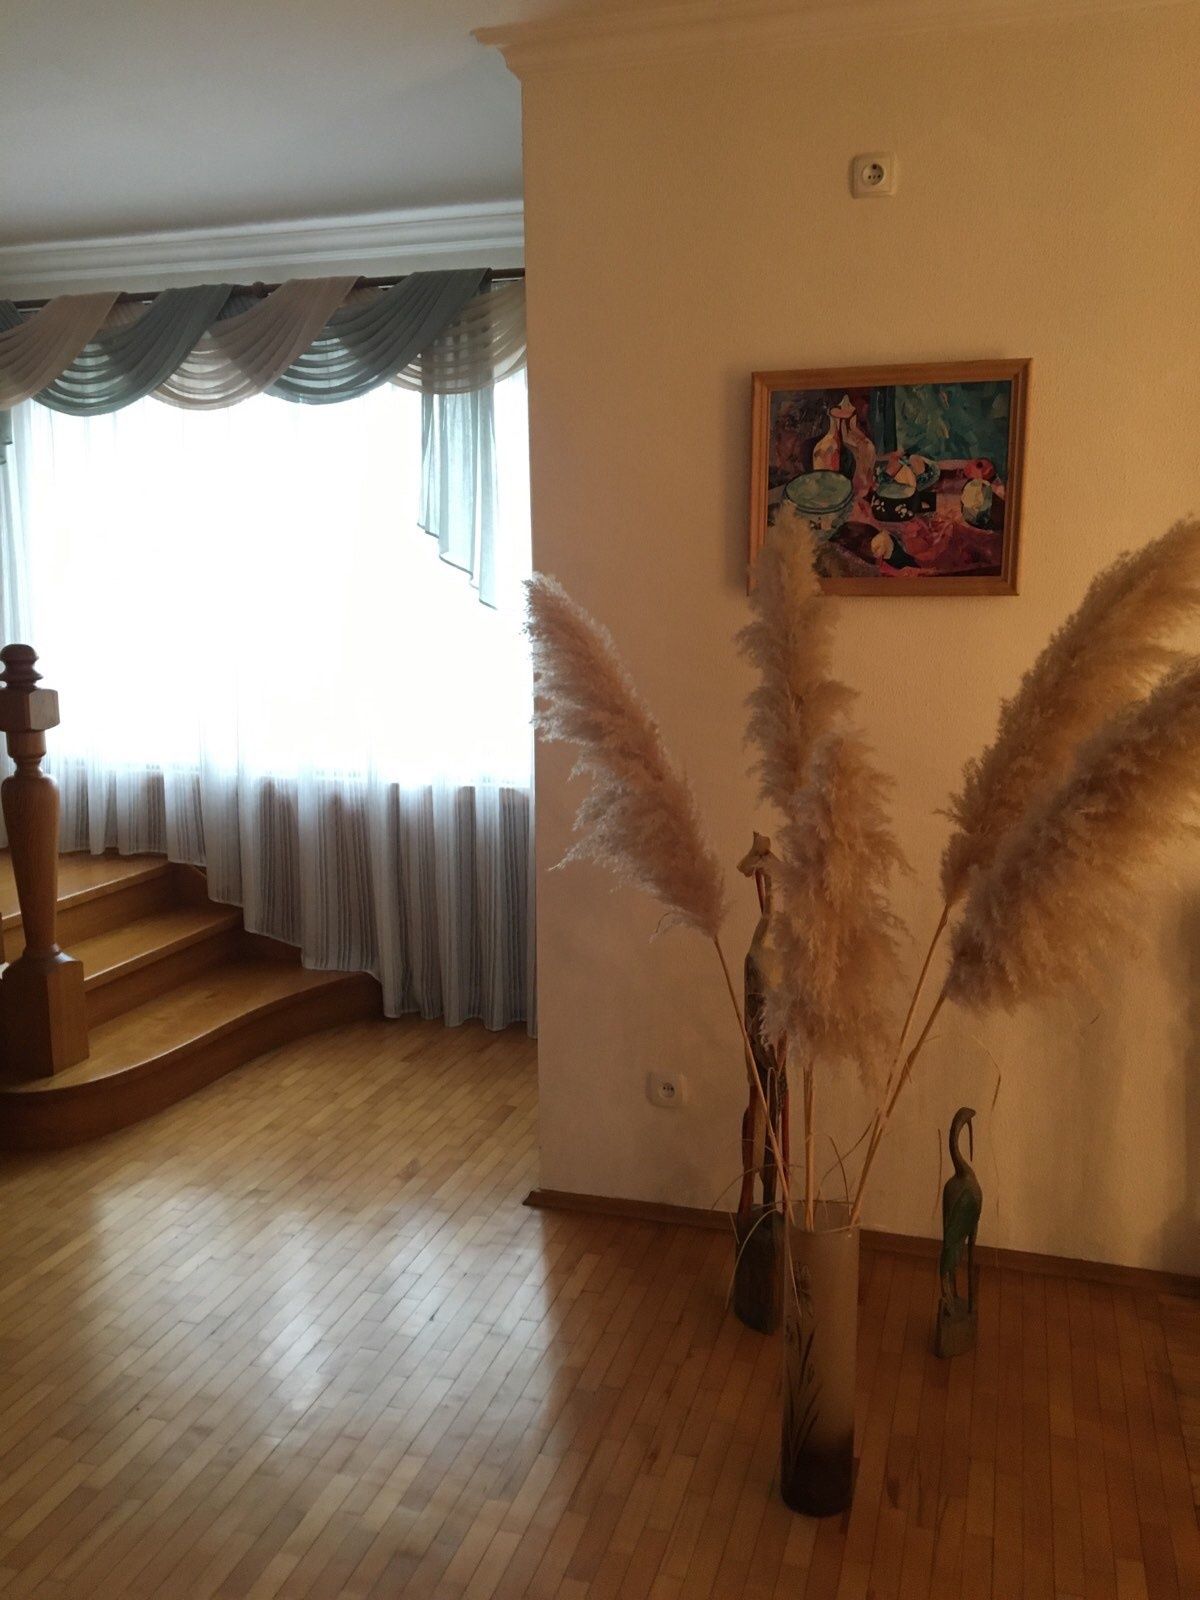 Продаётся дом в элитном районе Днепра(Гагарина),на Рыбинской